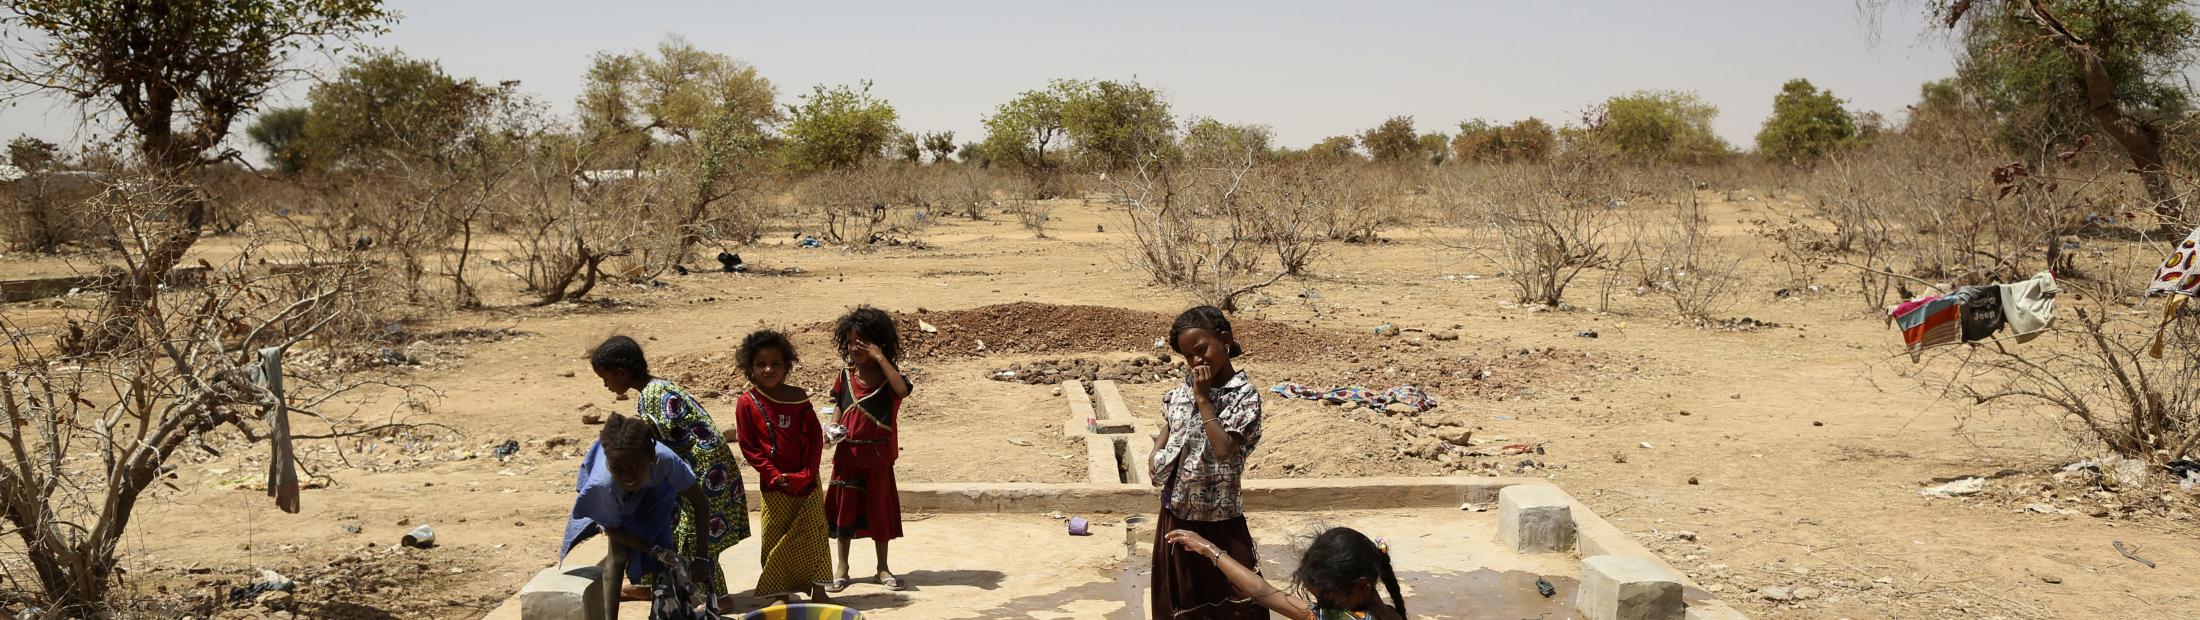 50.000 refugiados malienses tendrán acceso a agua potable